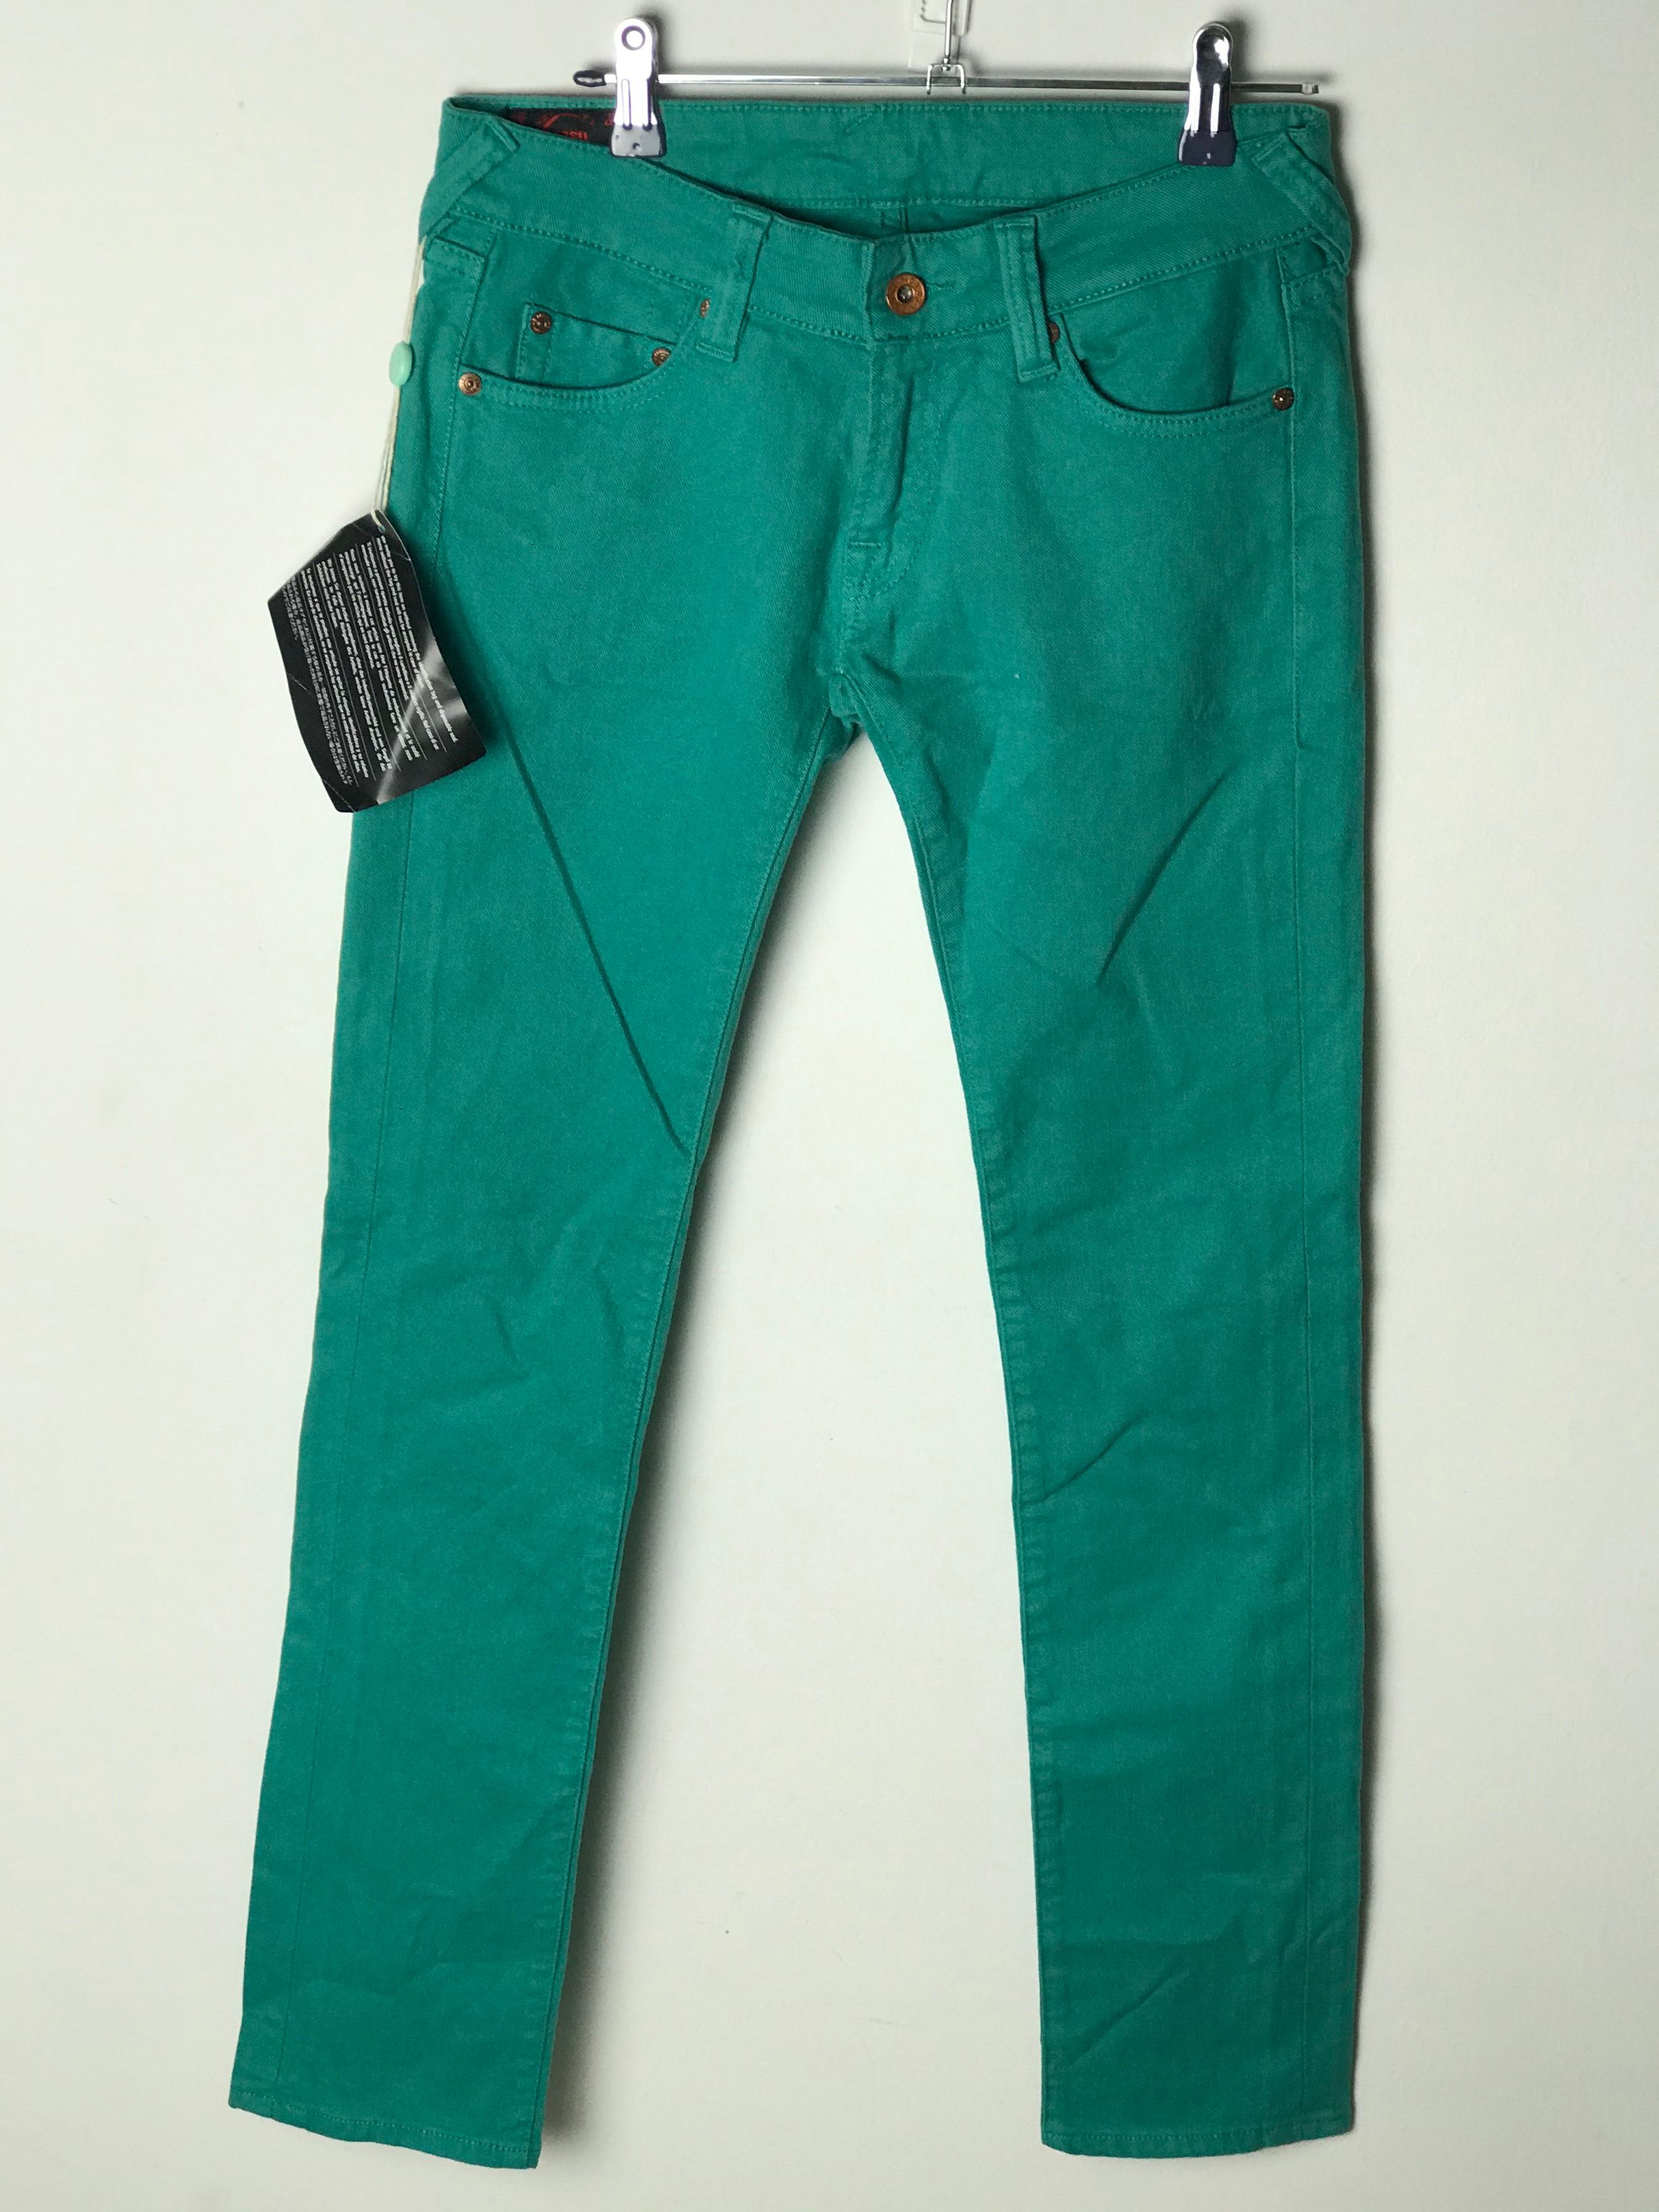 Vintage WMNS Evisu jeans pants DSWT Size US 28 / EU 44 - 2 Preview